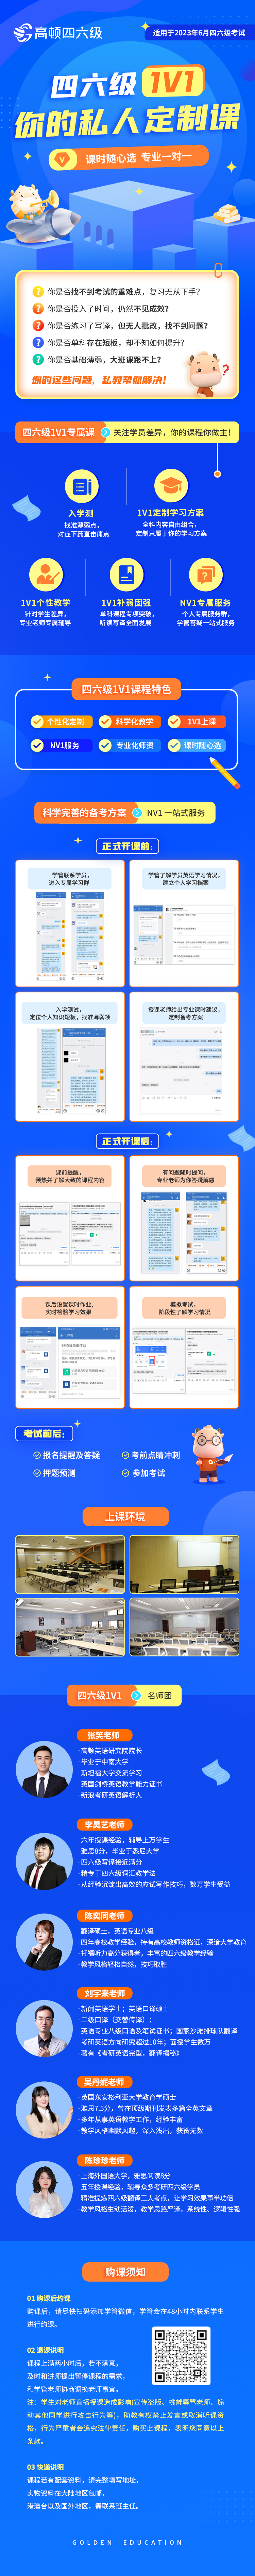 https://simg01.gaodunwangxiao.com/uploadfiles/product-center/202212/06/eb4fa_20221206171559.jpg